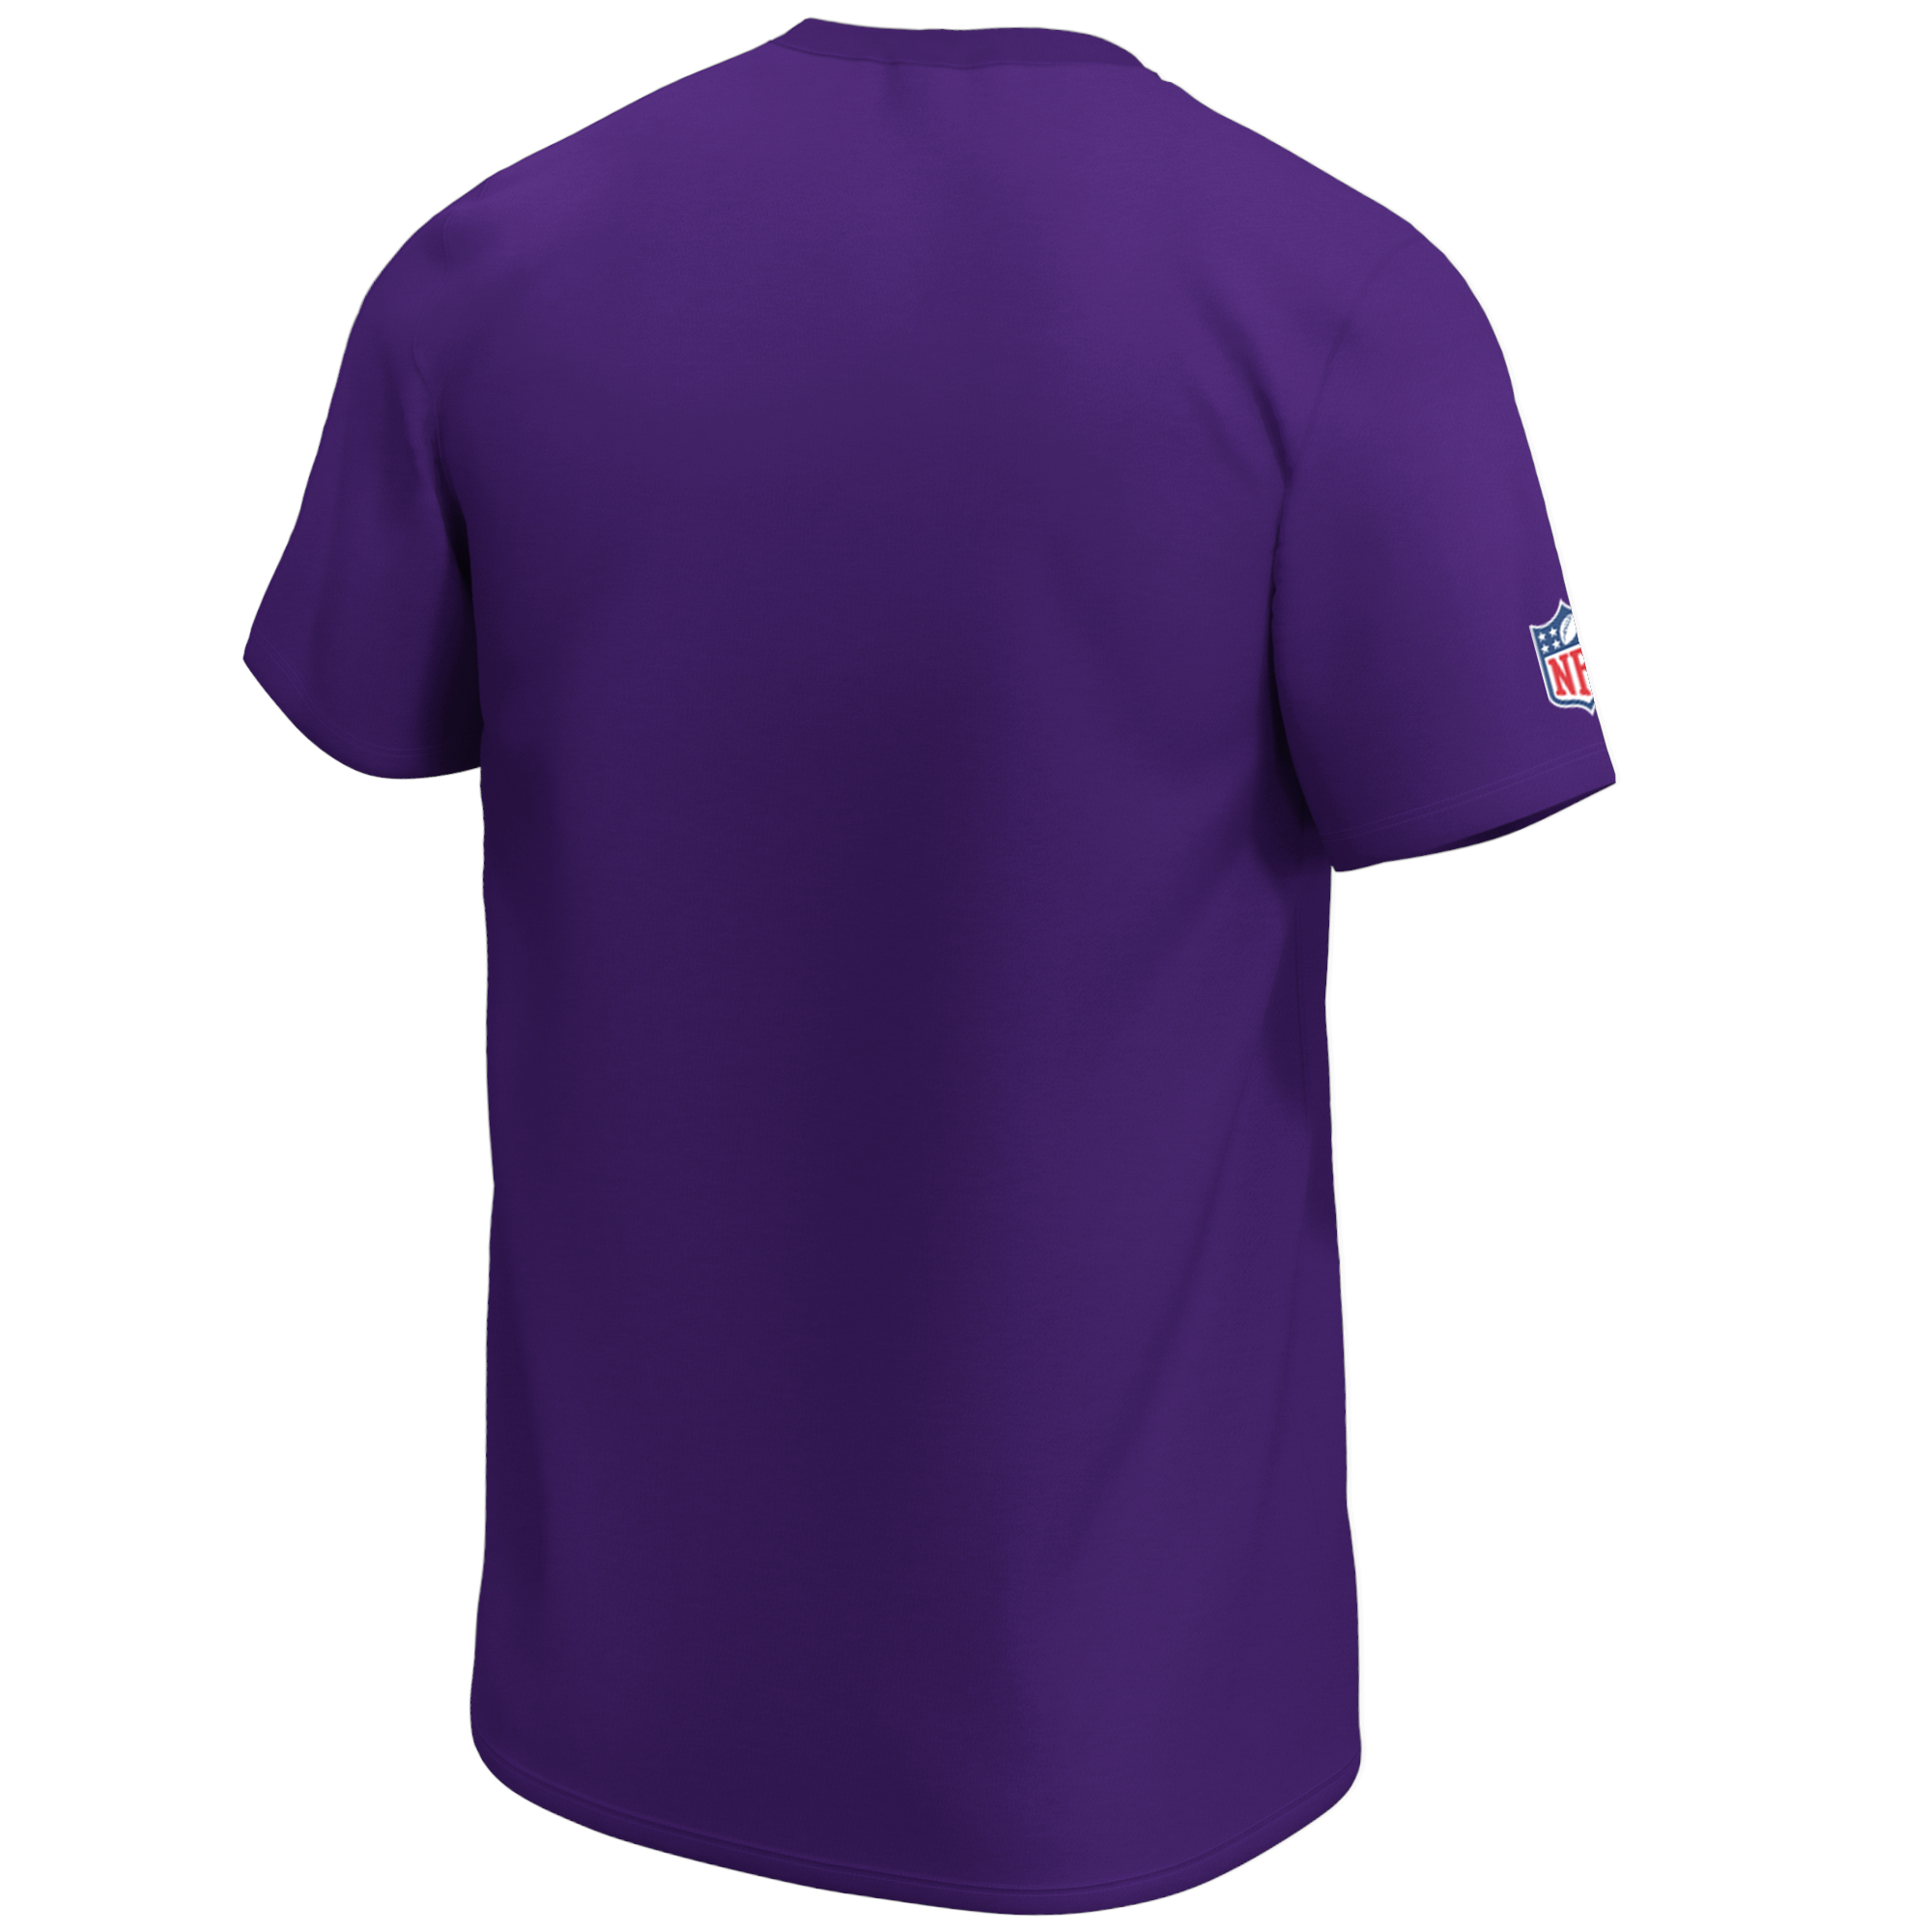 Minnesota Vikings NFL Mid Essentials Crest T-Shirt Fanatics